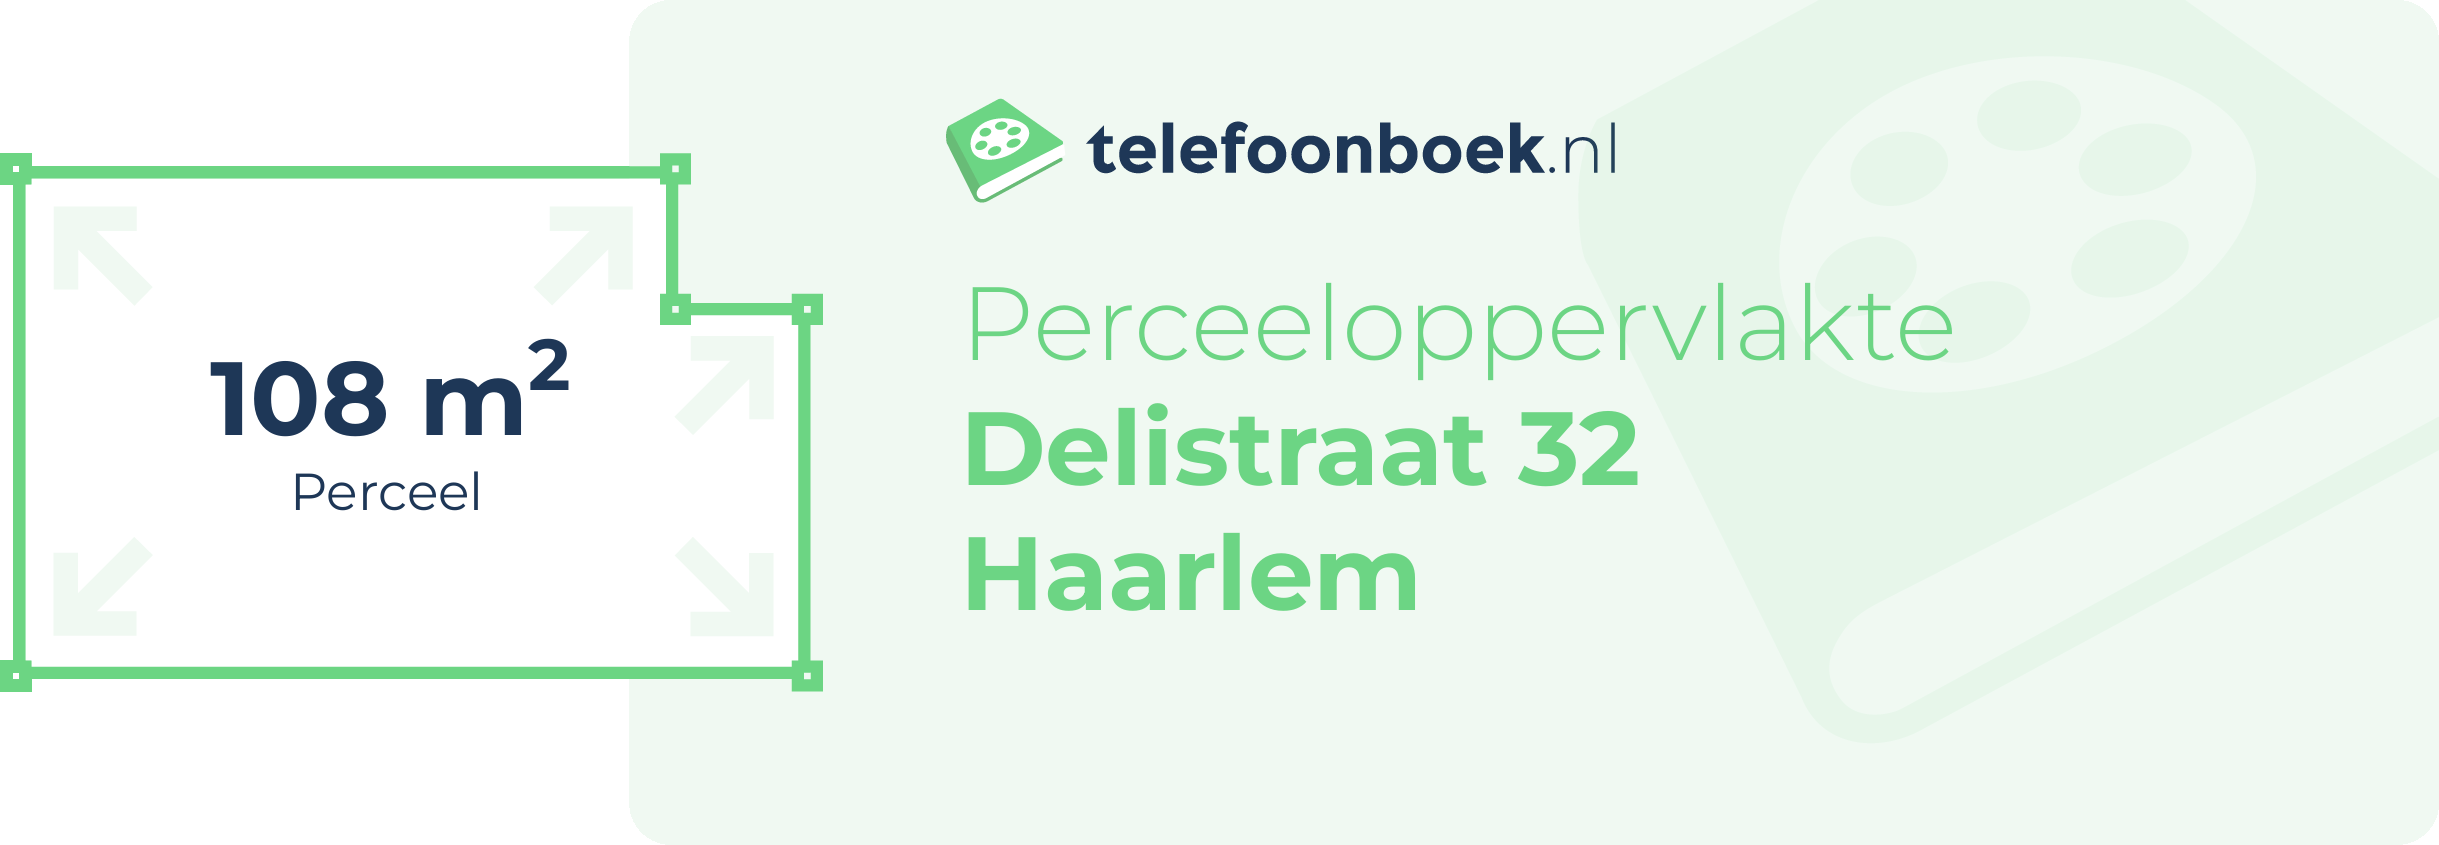 Perceeloppervlakte Delistraat 32 Haarlem